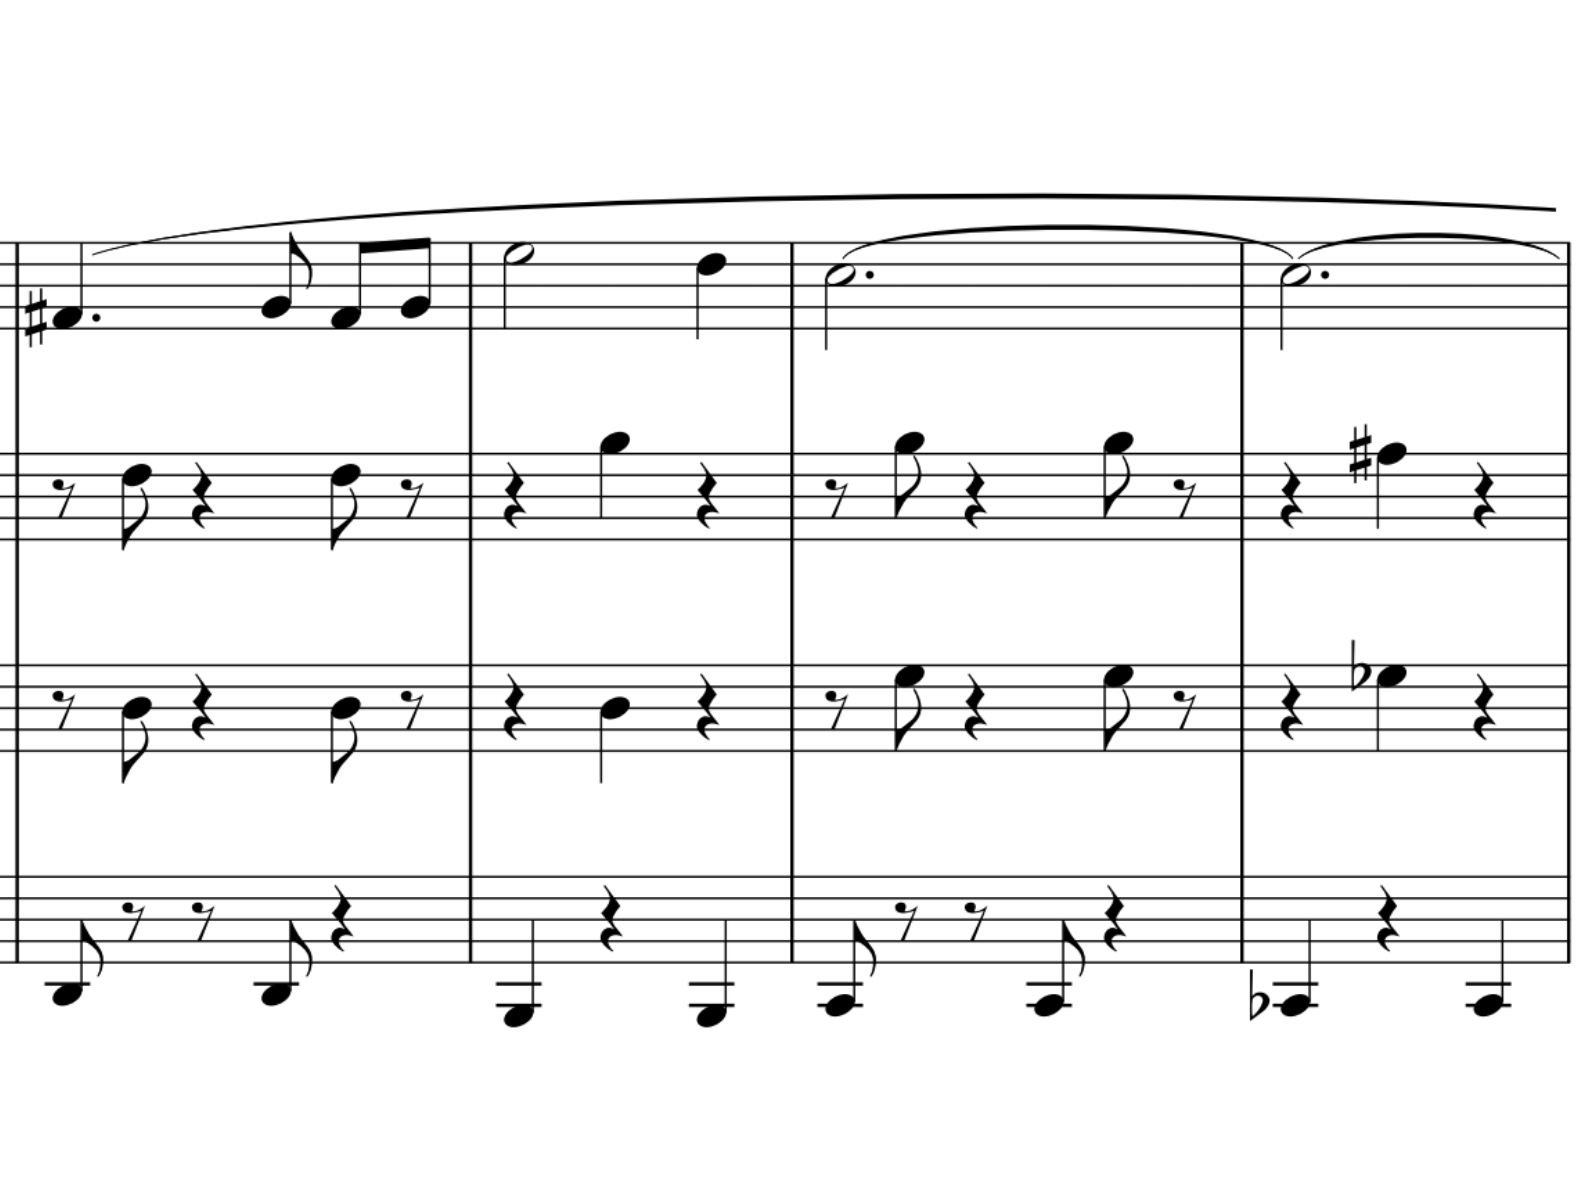 1小節1つ振りで取った方がわかりやすい伴奏パターンの譜例